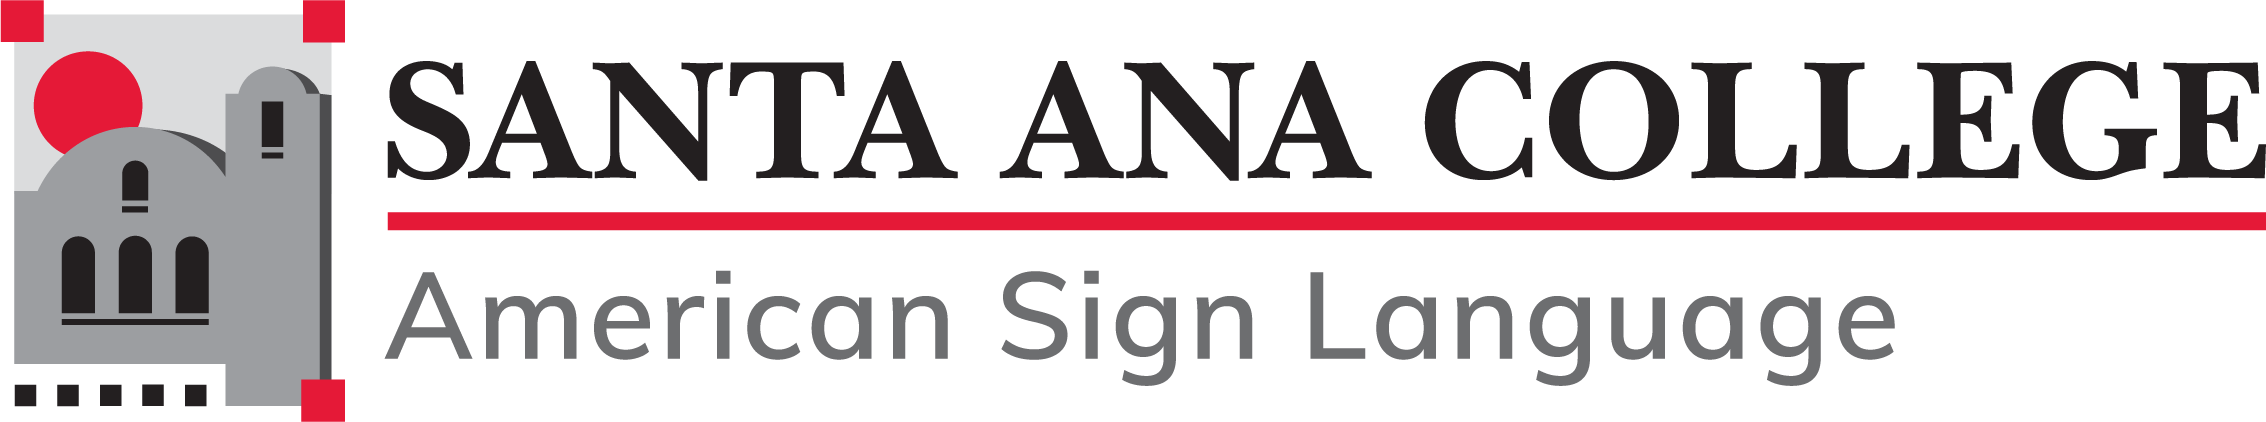 SAC_ASL_Logo.png